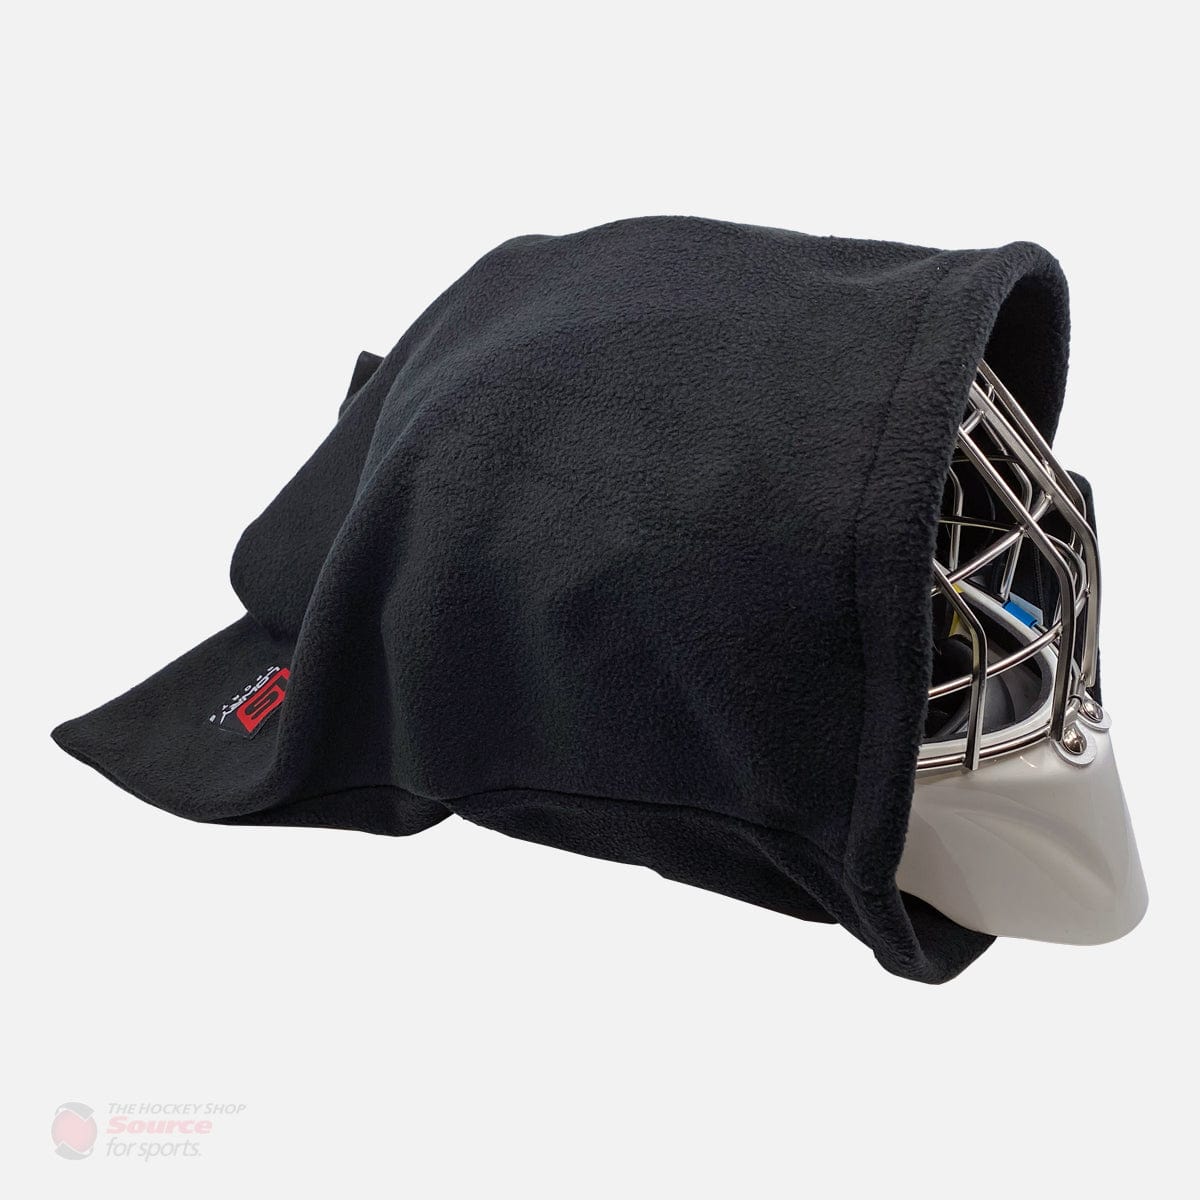 Lowry Helmet Bag